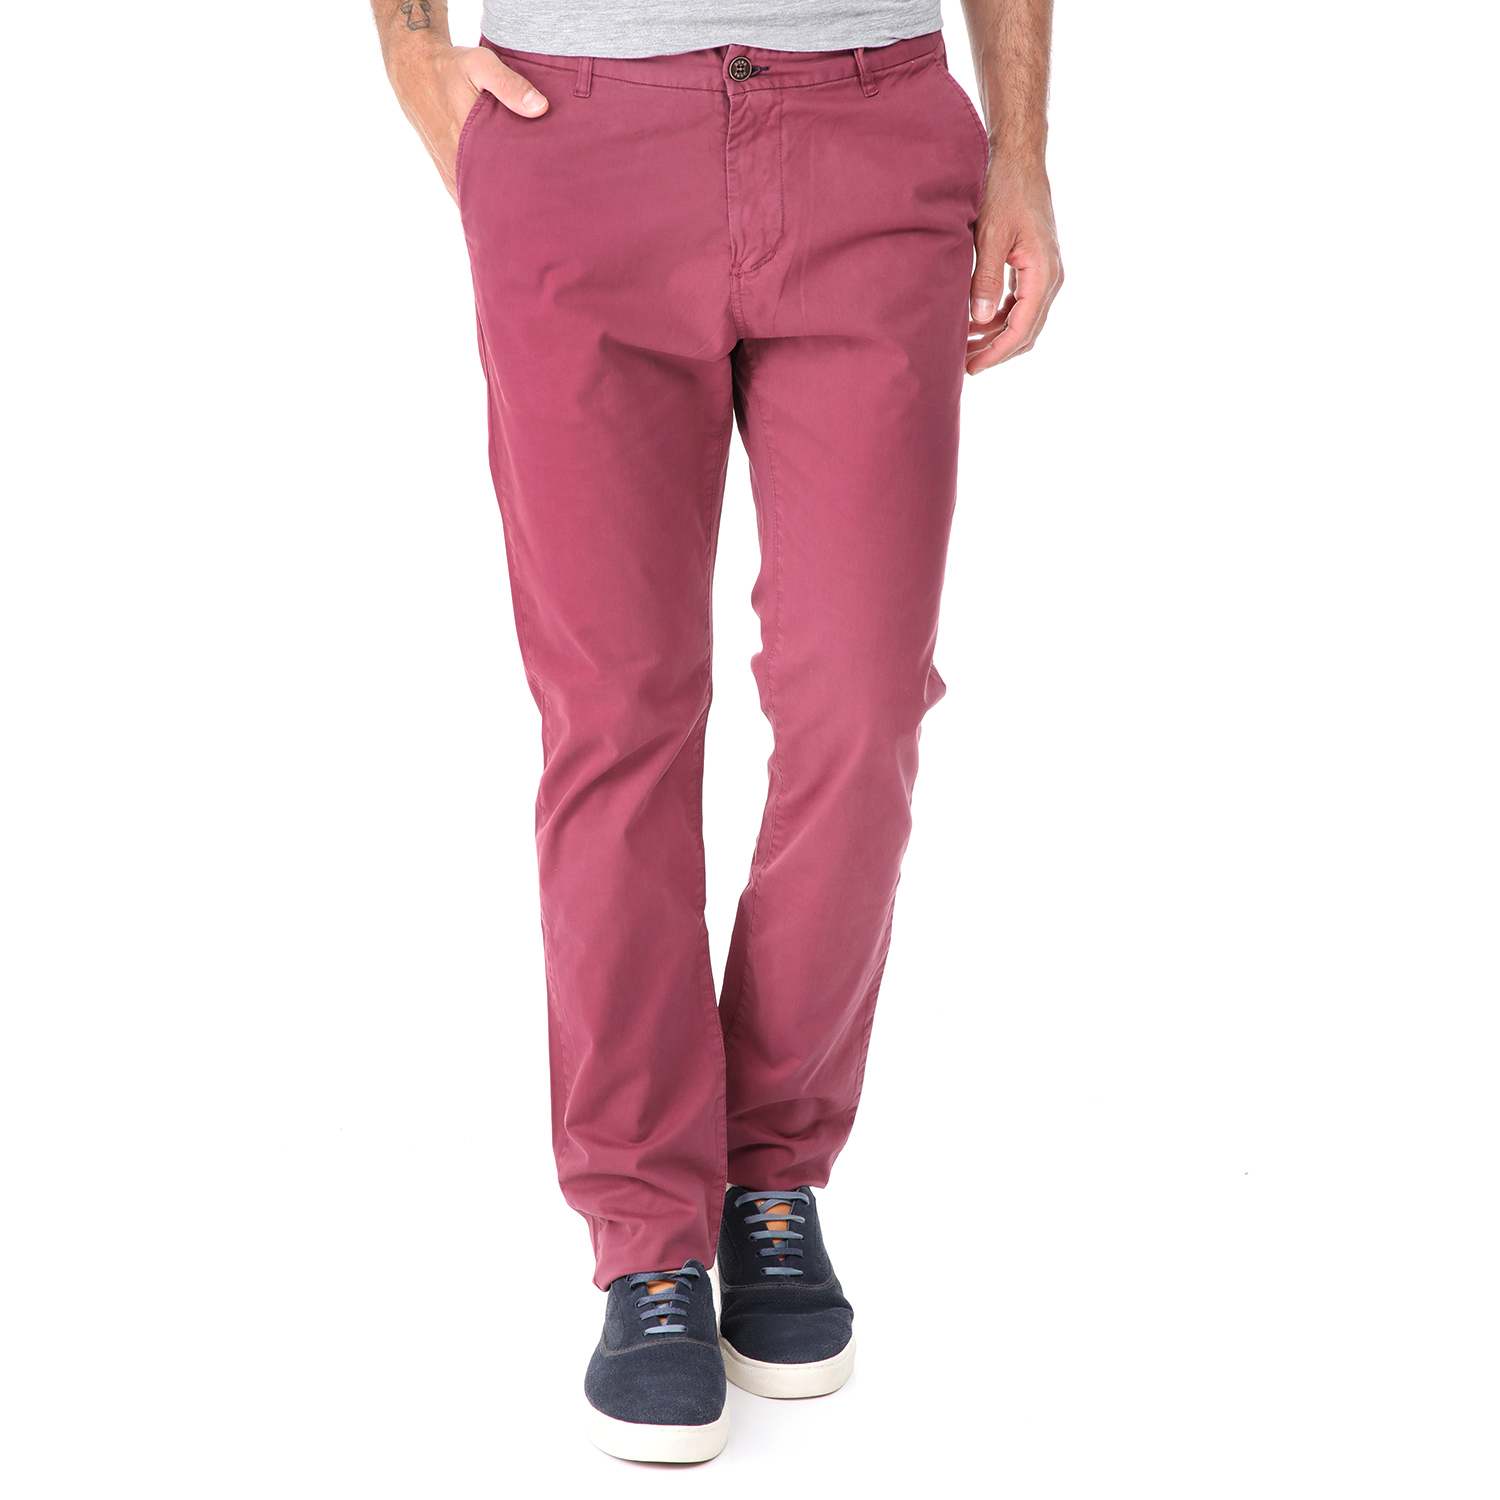 Ανδρικά/Ρούχα/Παντελόνια/Chinos DORS - Ανδρικό chino παντελόνι DORS ροζ